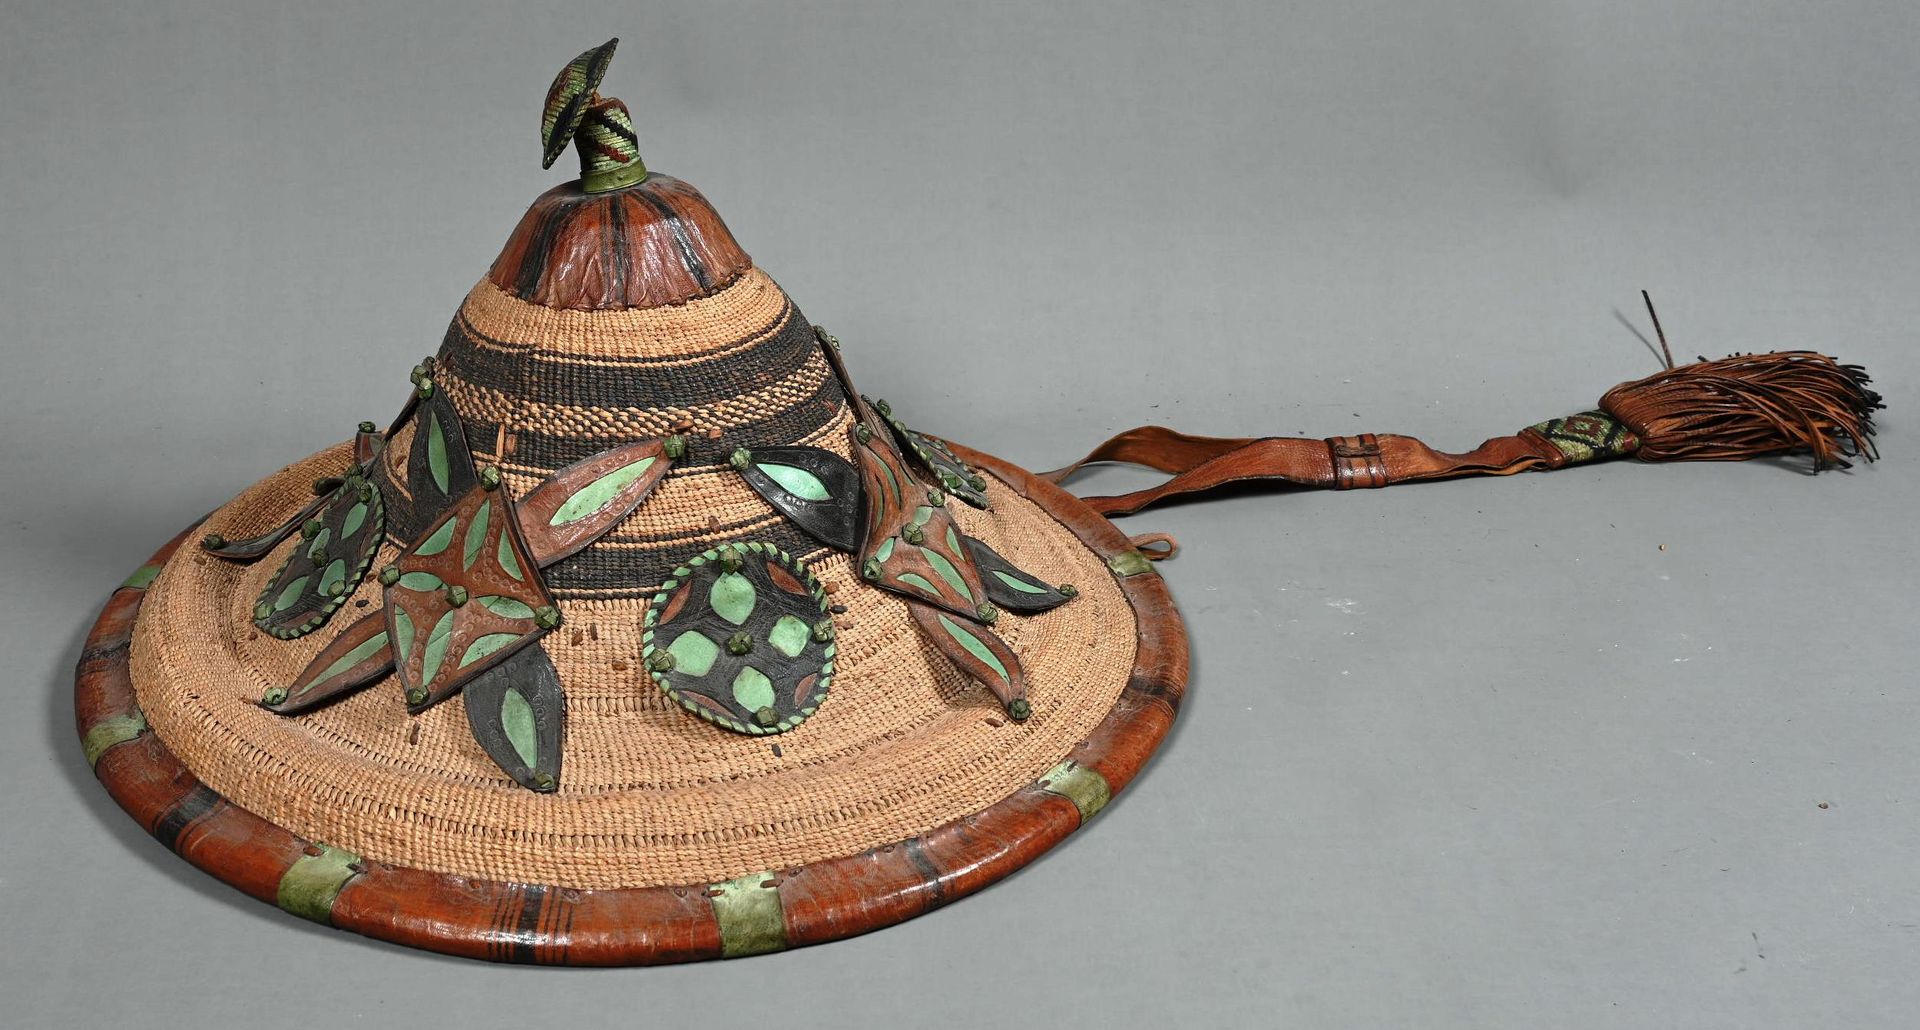 Couvre chef de forme conique 圆锥形的编织头套，上面有应用皮革的几何形状。手工制作。

直径：49厘米